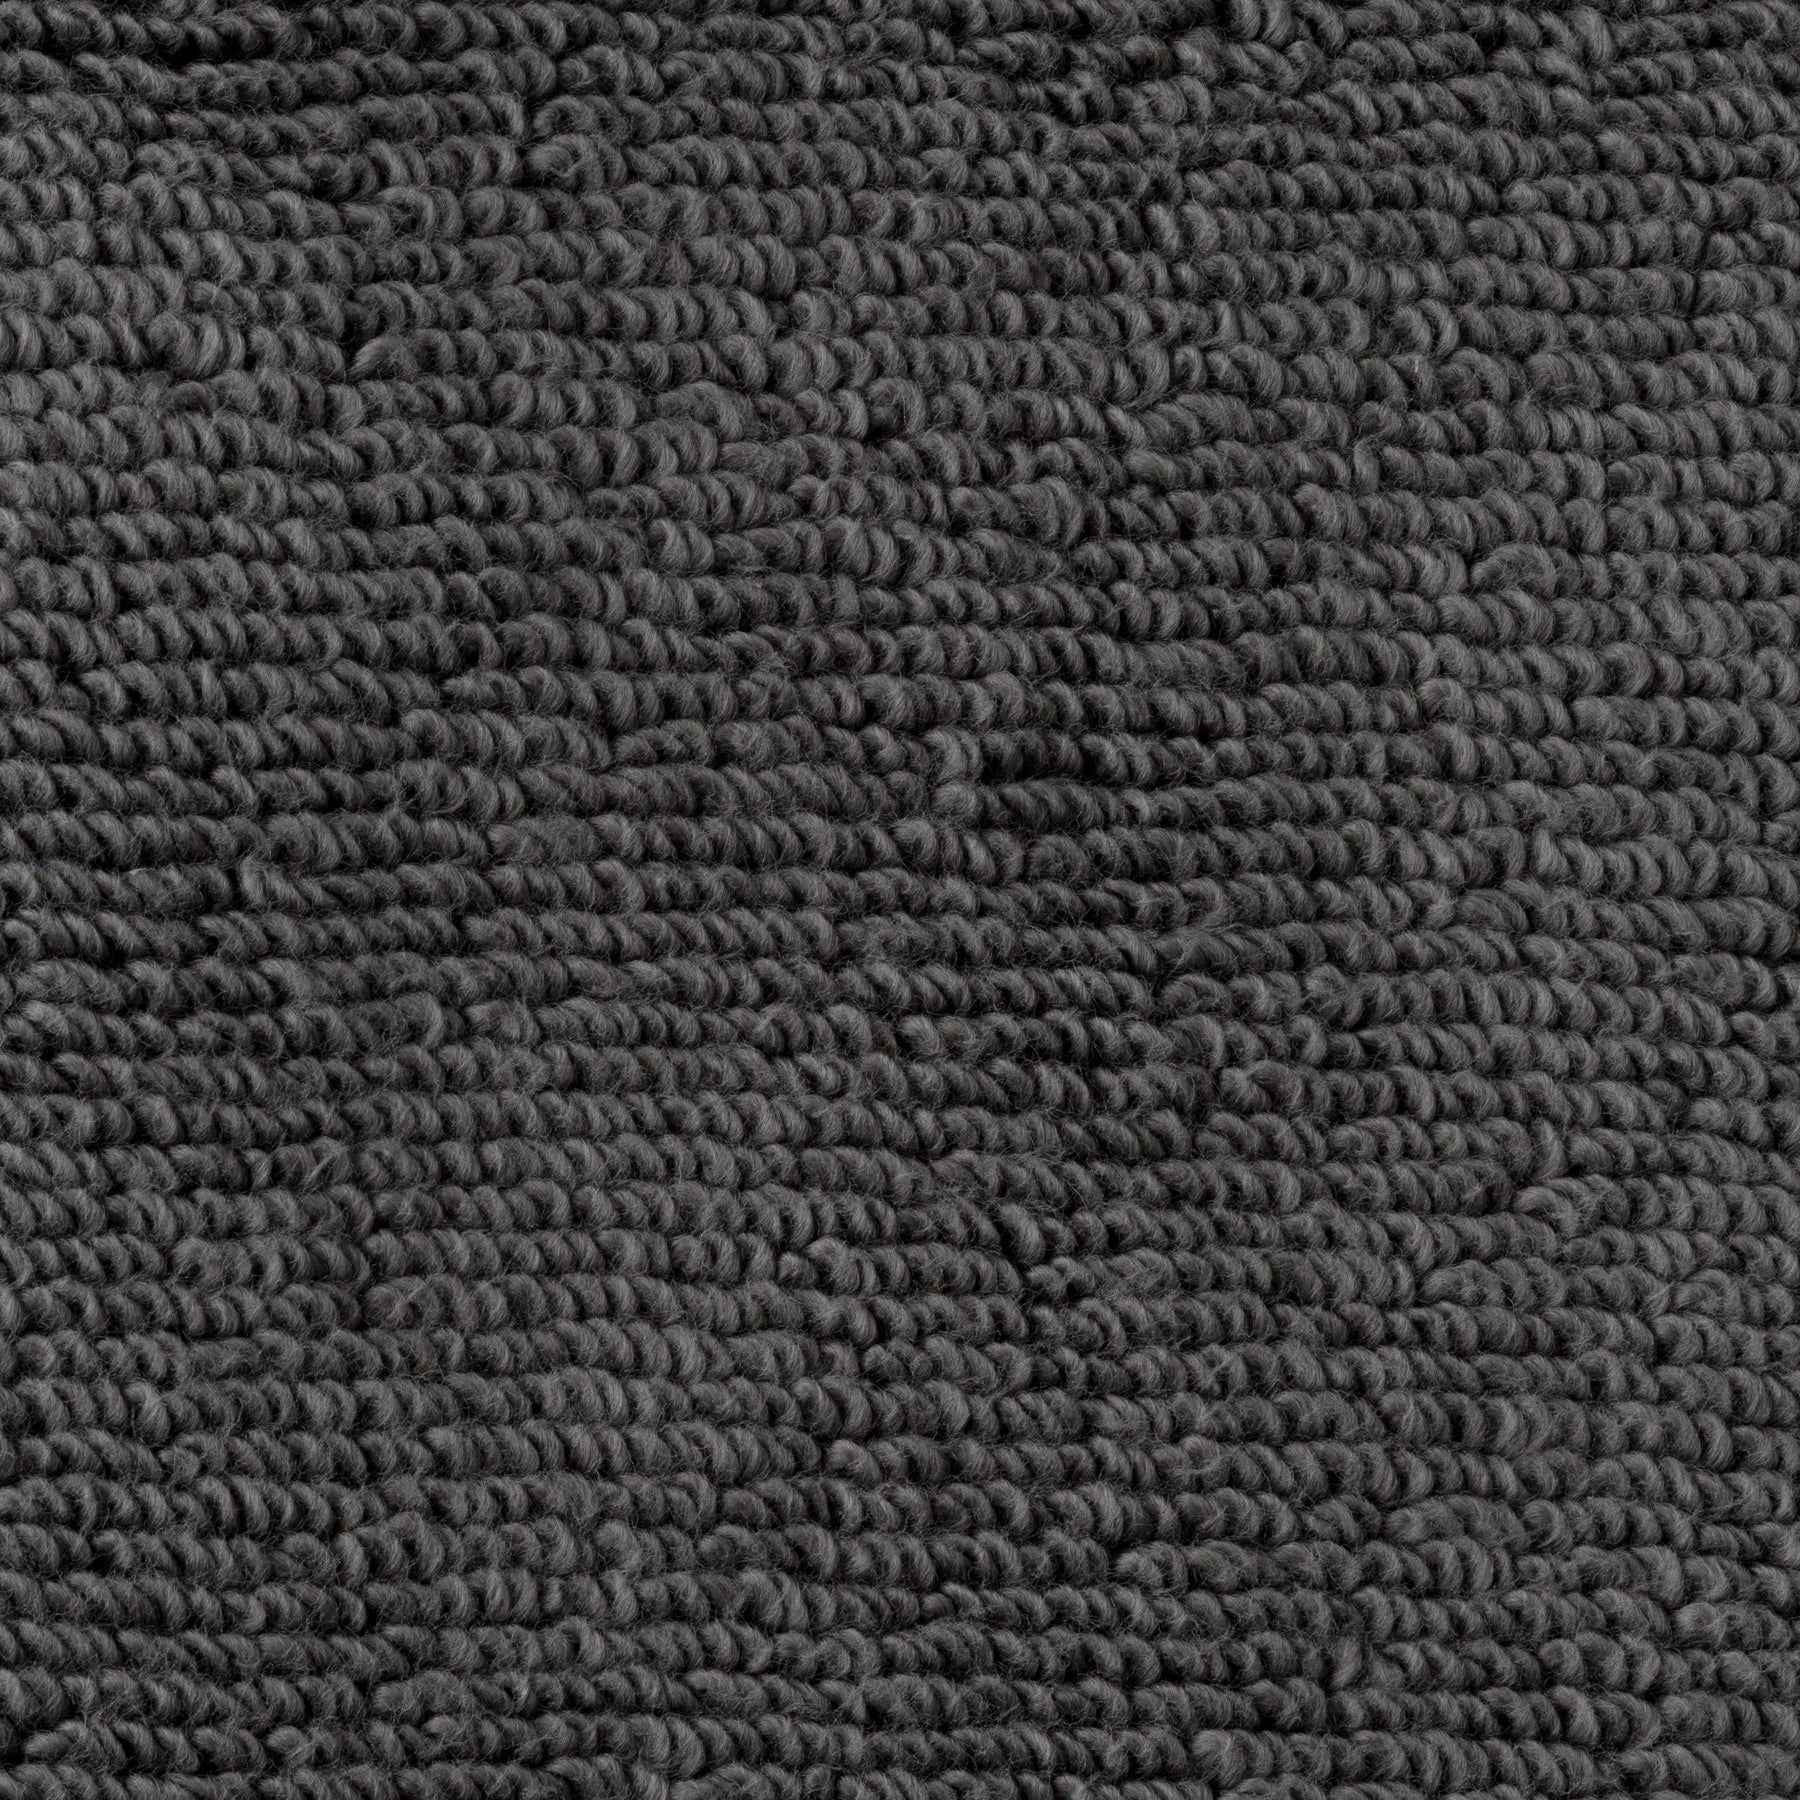 Egyptian Cotton Bath Towel - Dark Grey - beddingbag.com